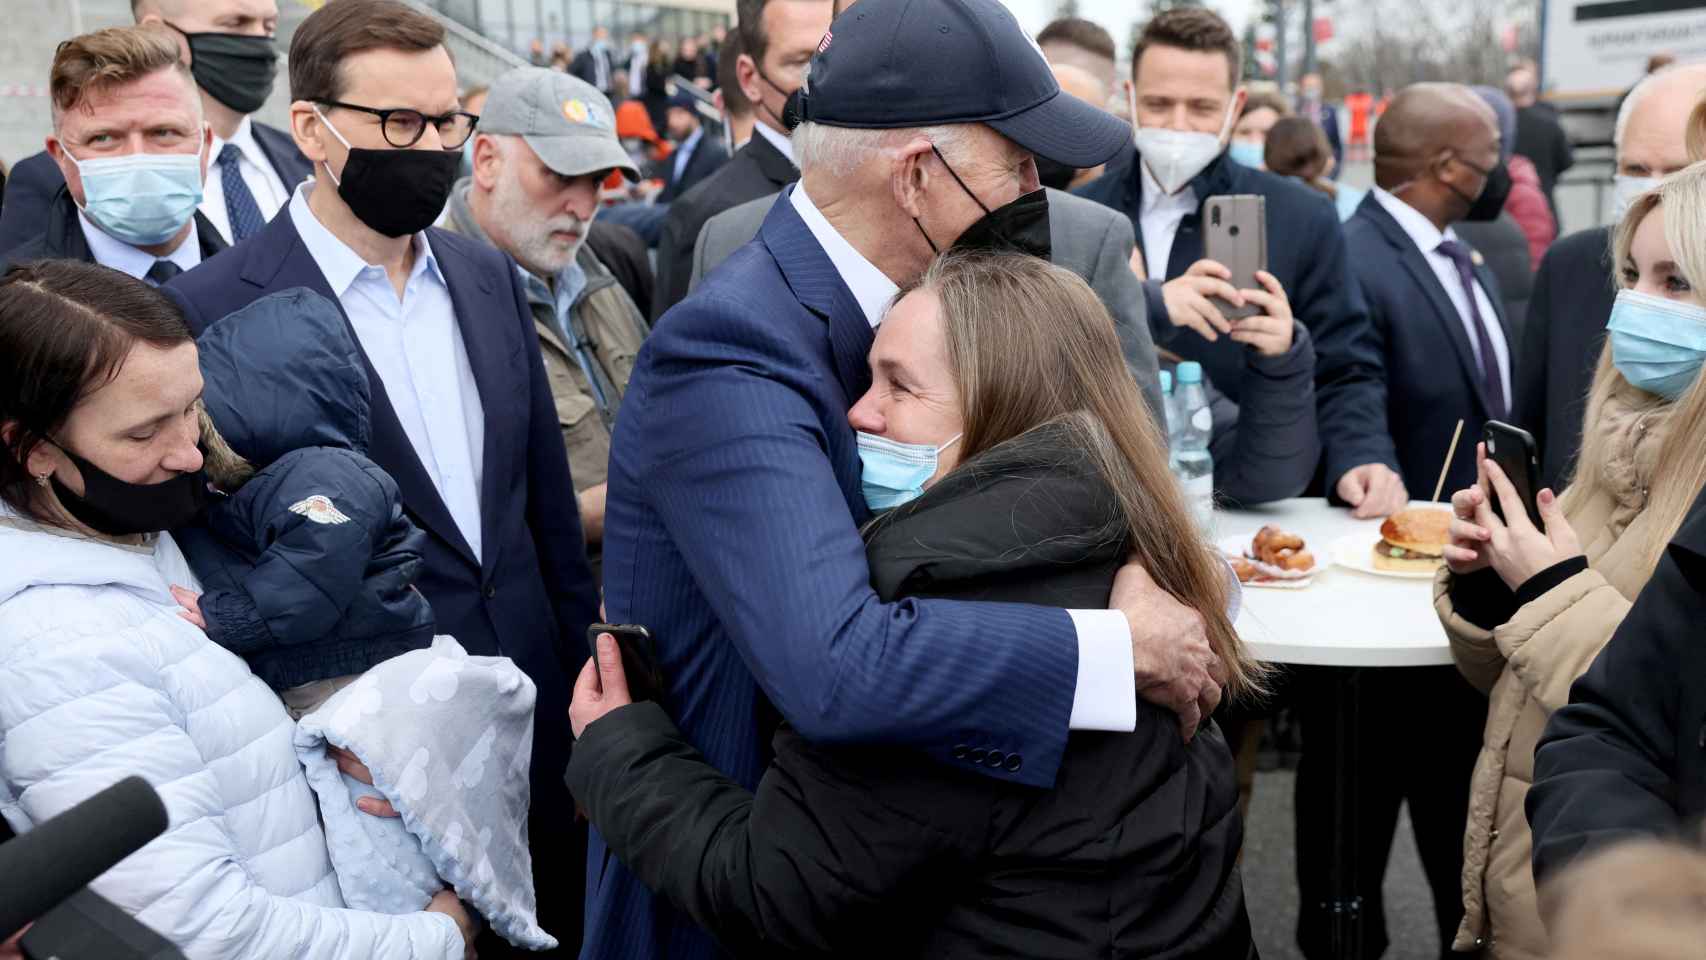 Joe Biden abraza a una mujer en su visita a refugiados ucranianos en Polonia.